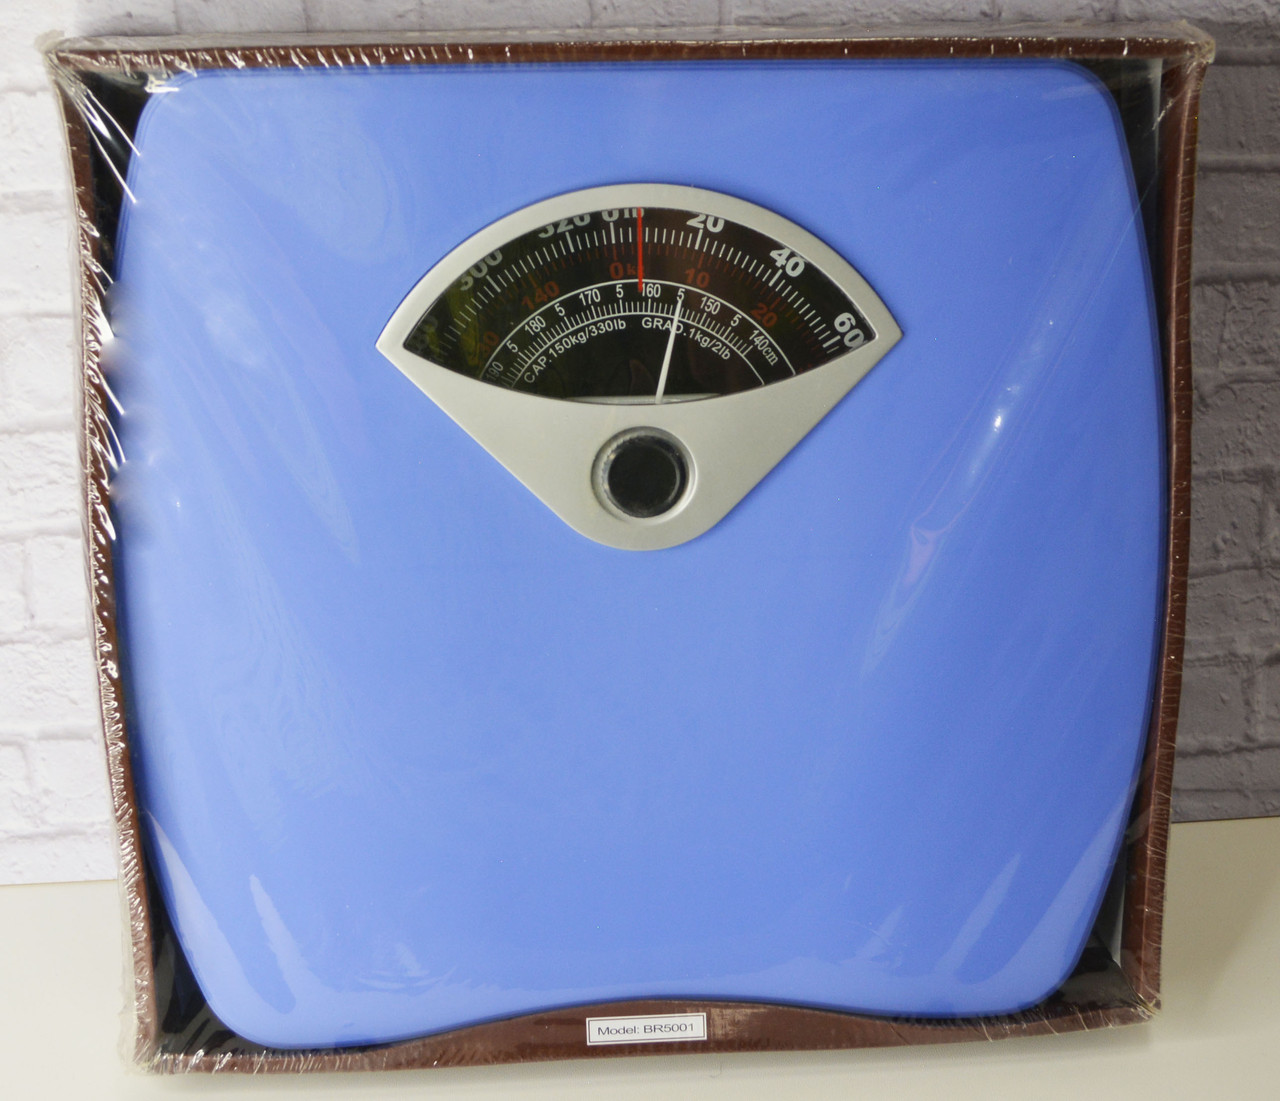  напольные весы до 150 кг Mechanical personal scale синие .